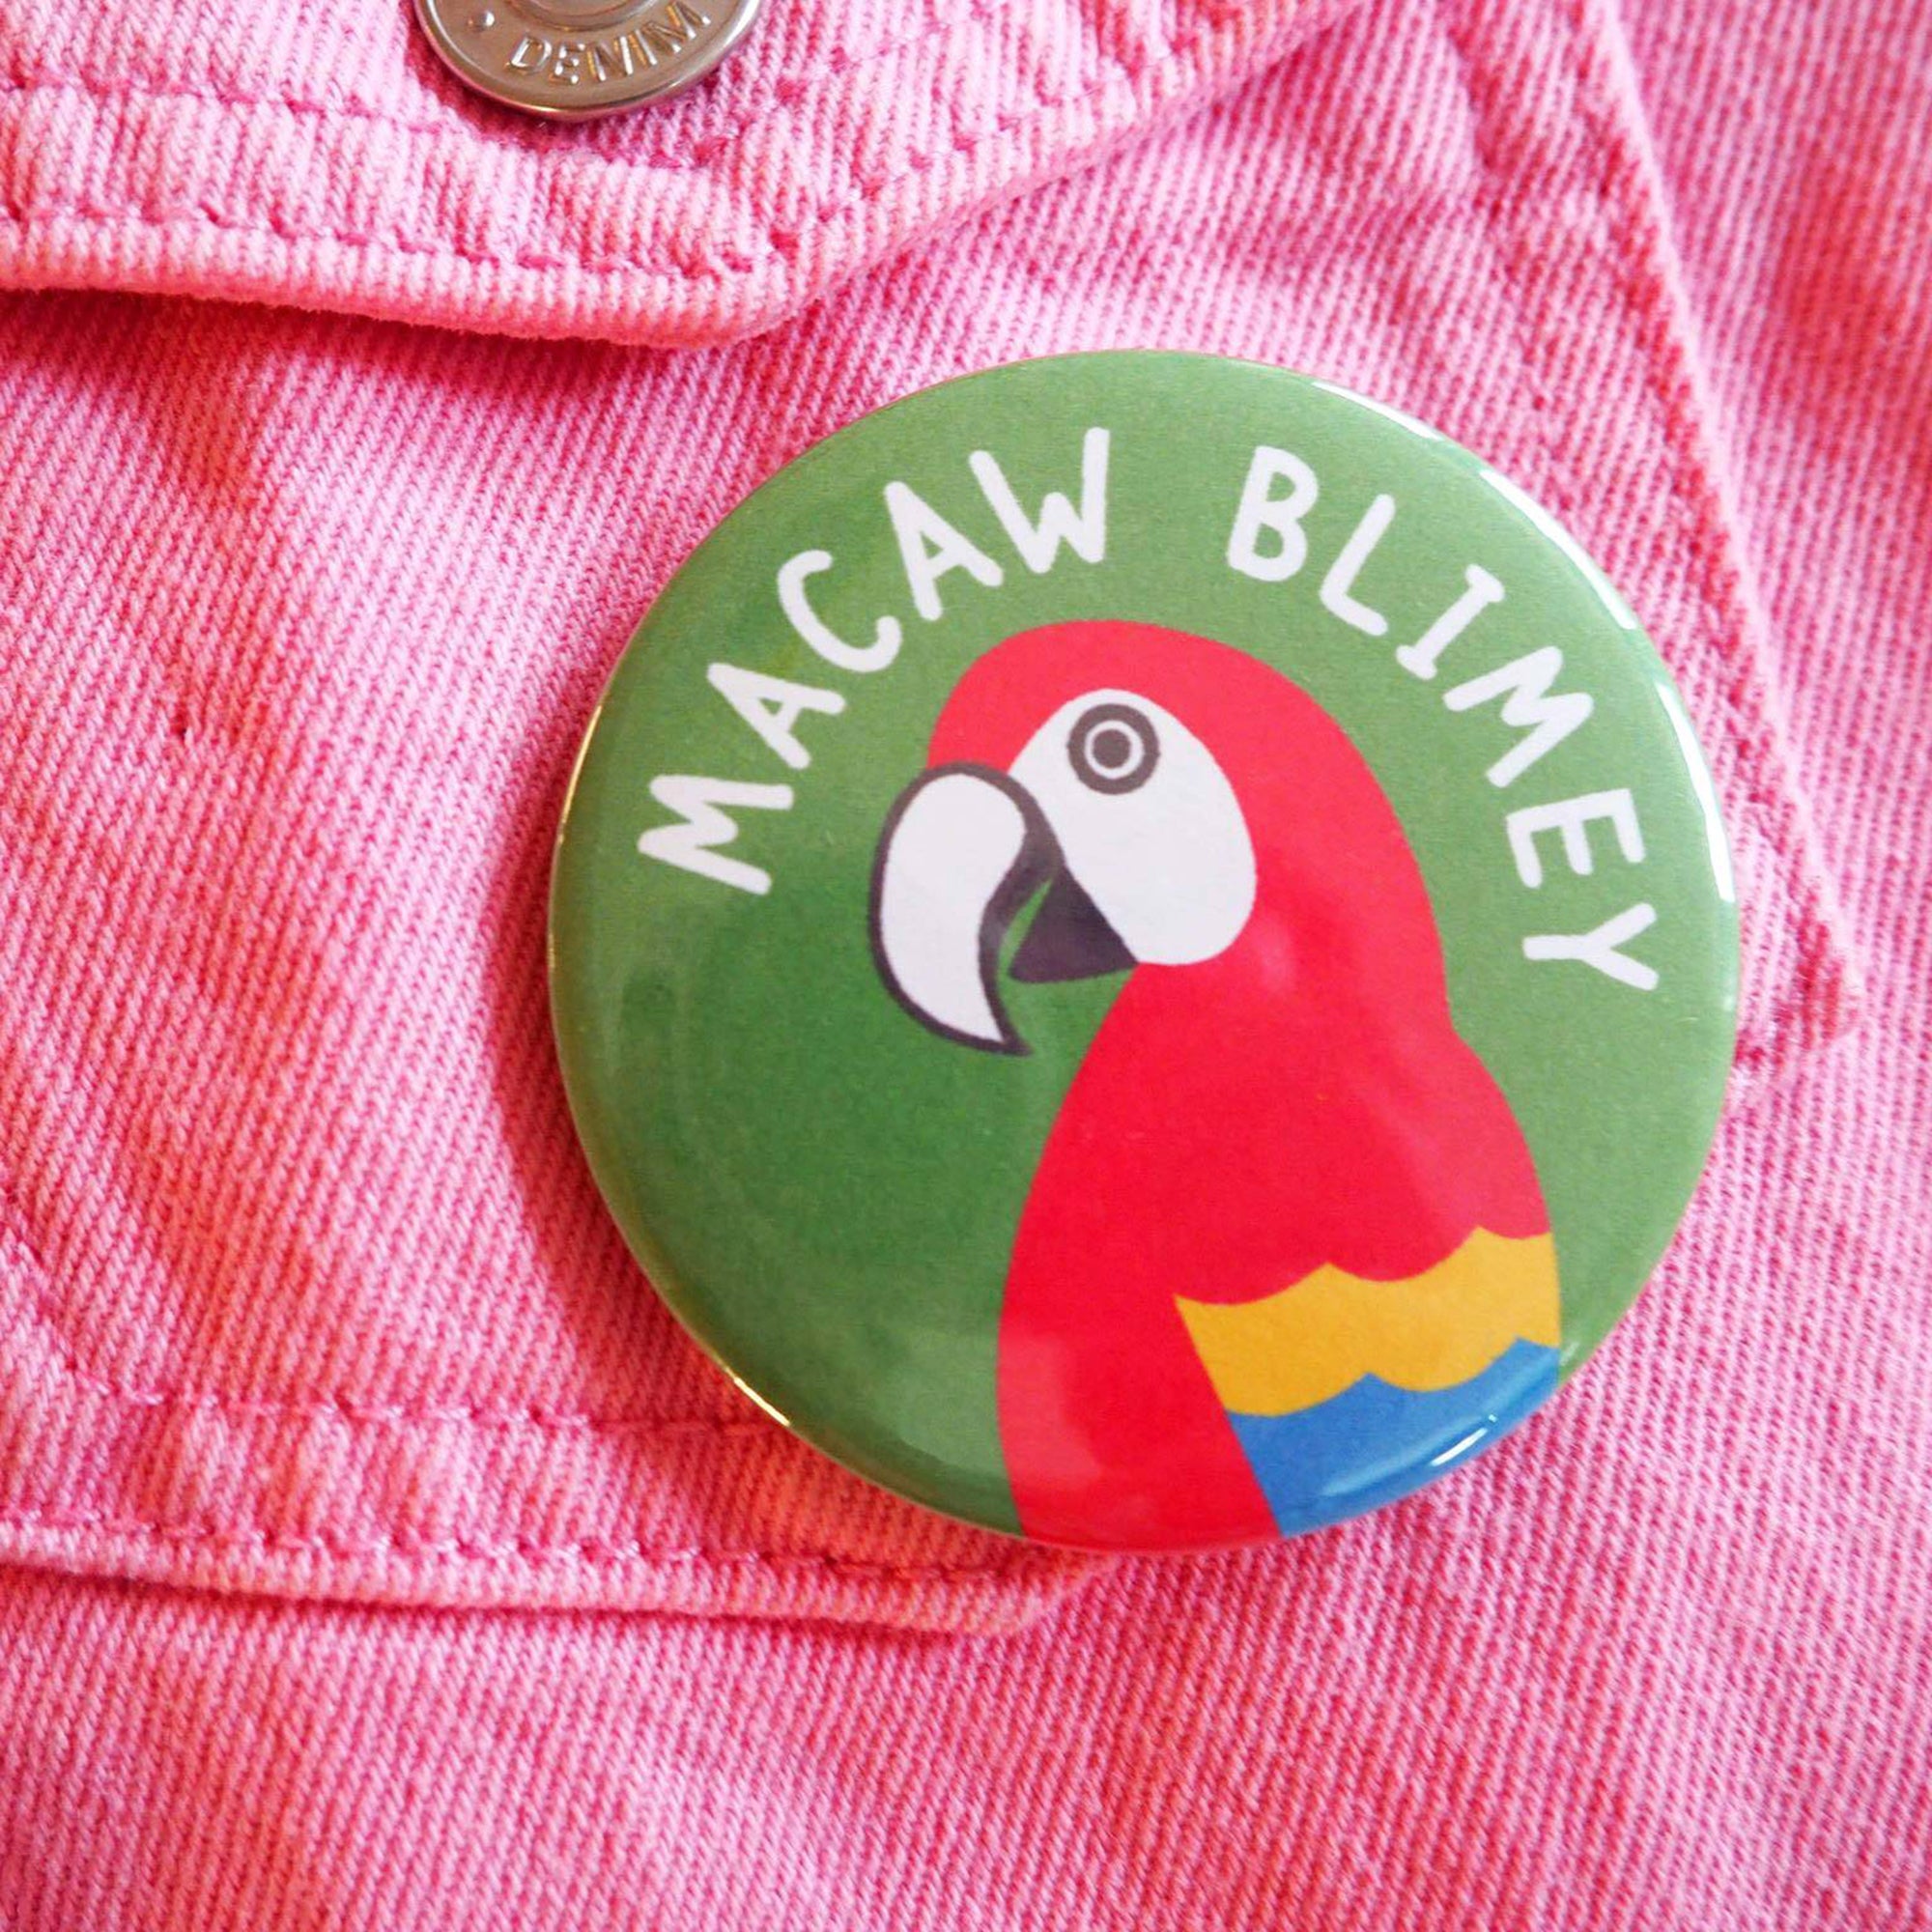 Macaw Blimey badge